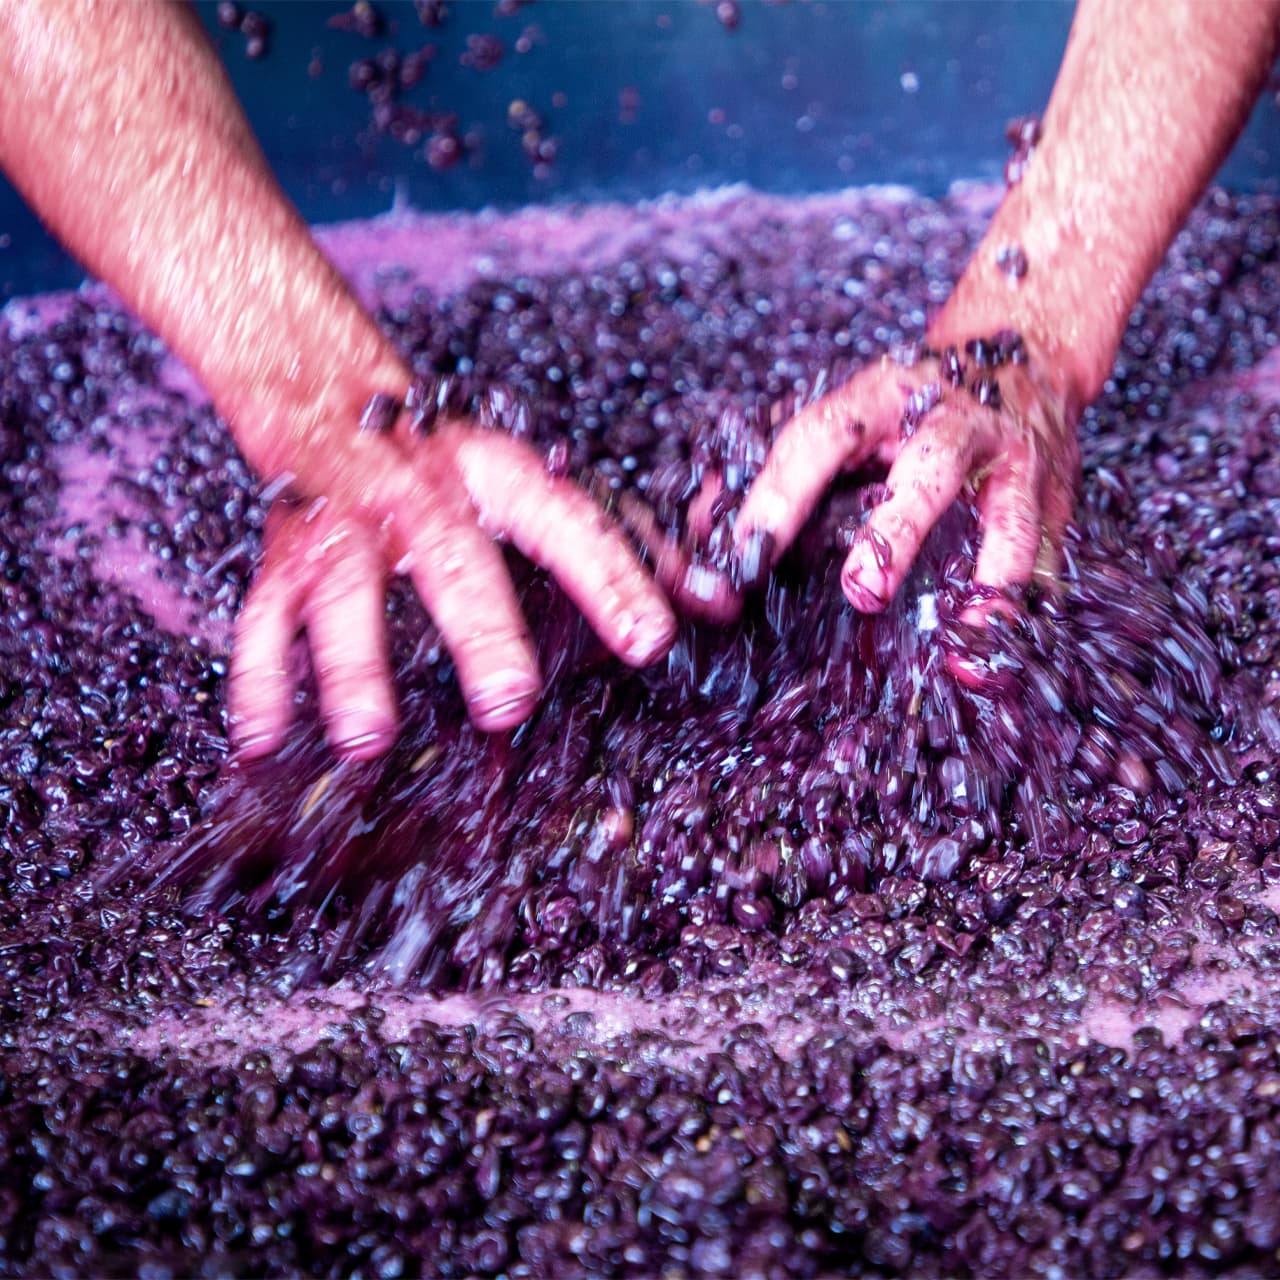 ambiance mains dans le vins, brassage raisins, Crozes-Hermitage